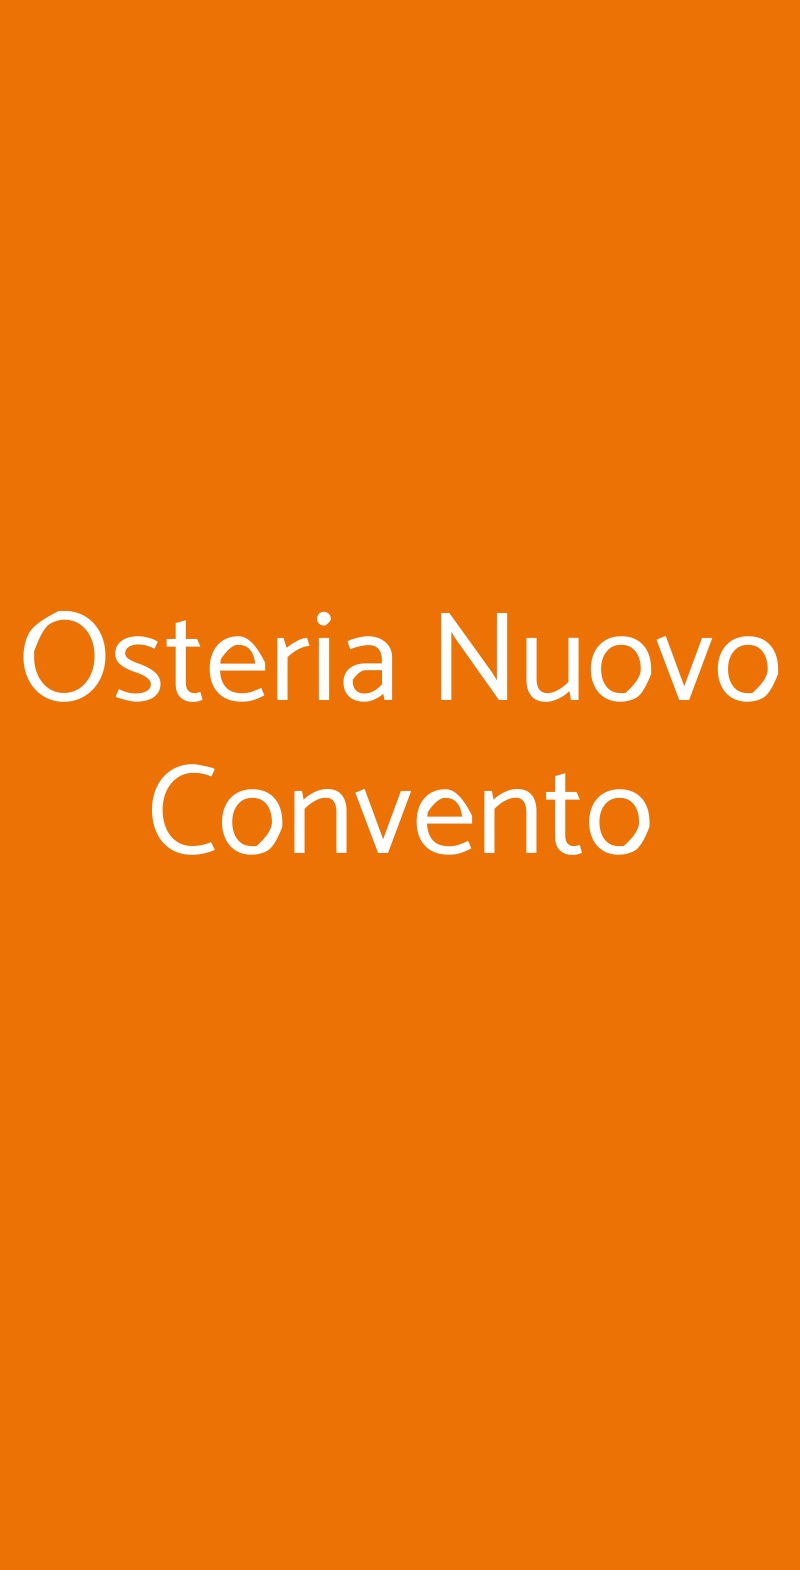 Osteria Nuovo Convento Milano menù 1 pagina